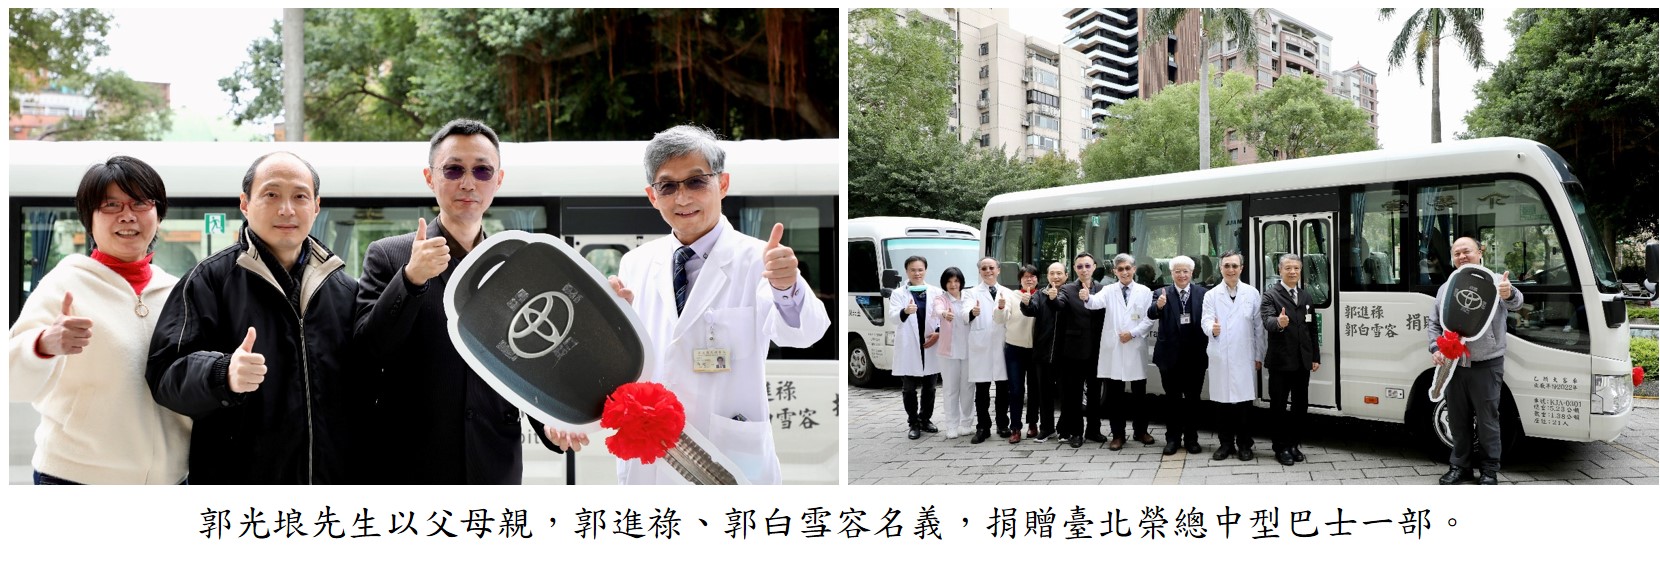 郭光埌先生以父母親，
郭進祿、郭白雪容名義，捐贈臺北榮總中型巴士一部。圖